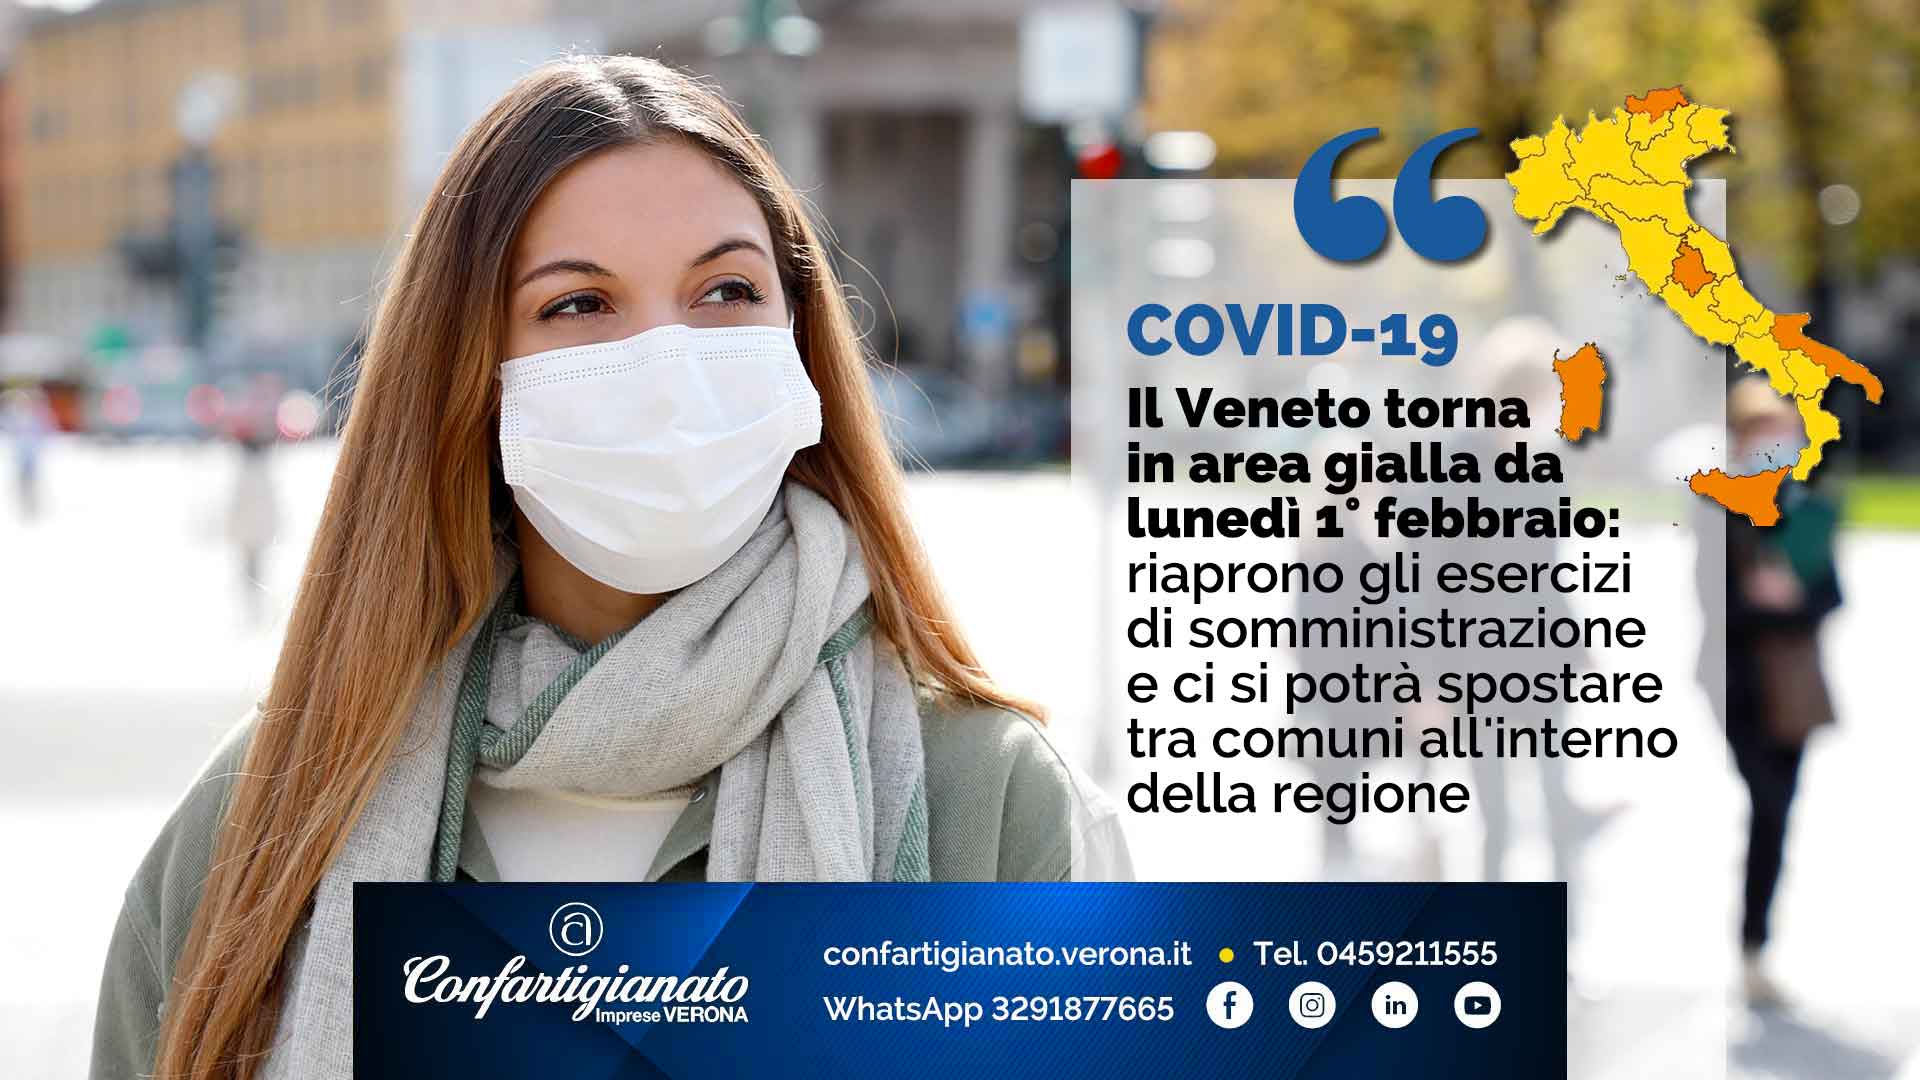 COVID-19 – Il Veneto torna in area gialla da lunedì 1° febbraio: riaprono gli esercizi di somministrazione e ci si potrà spostare tra comuni all'interno della regione